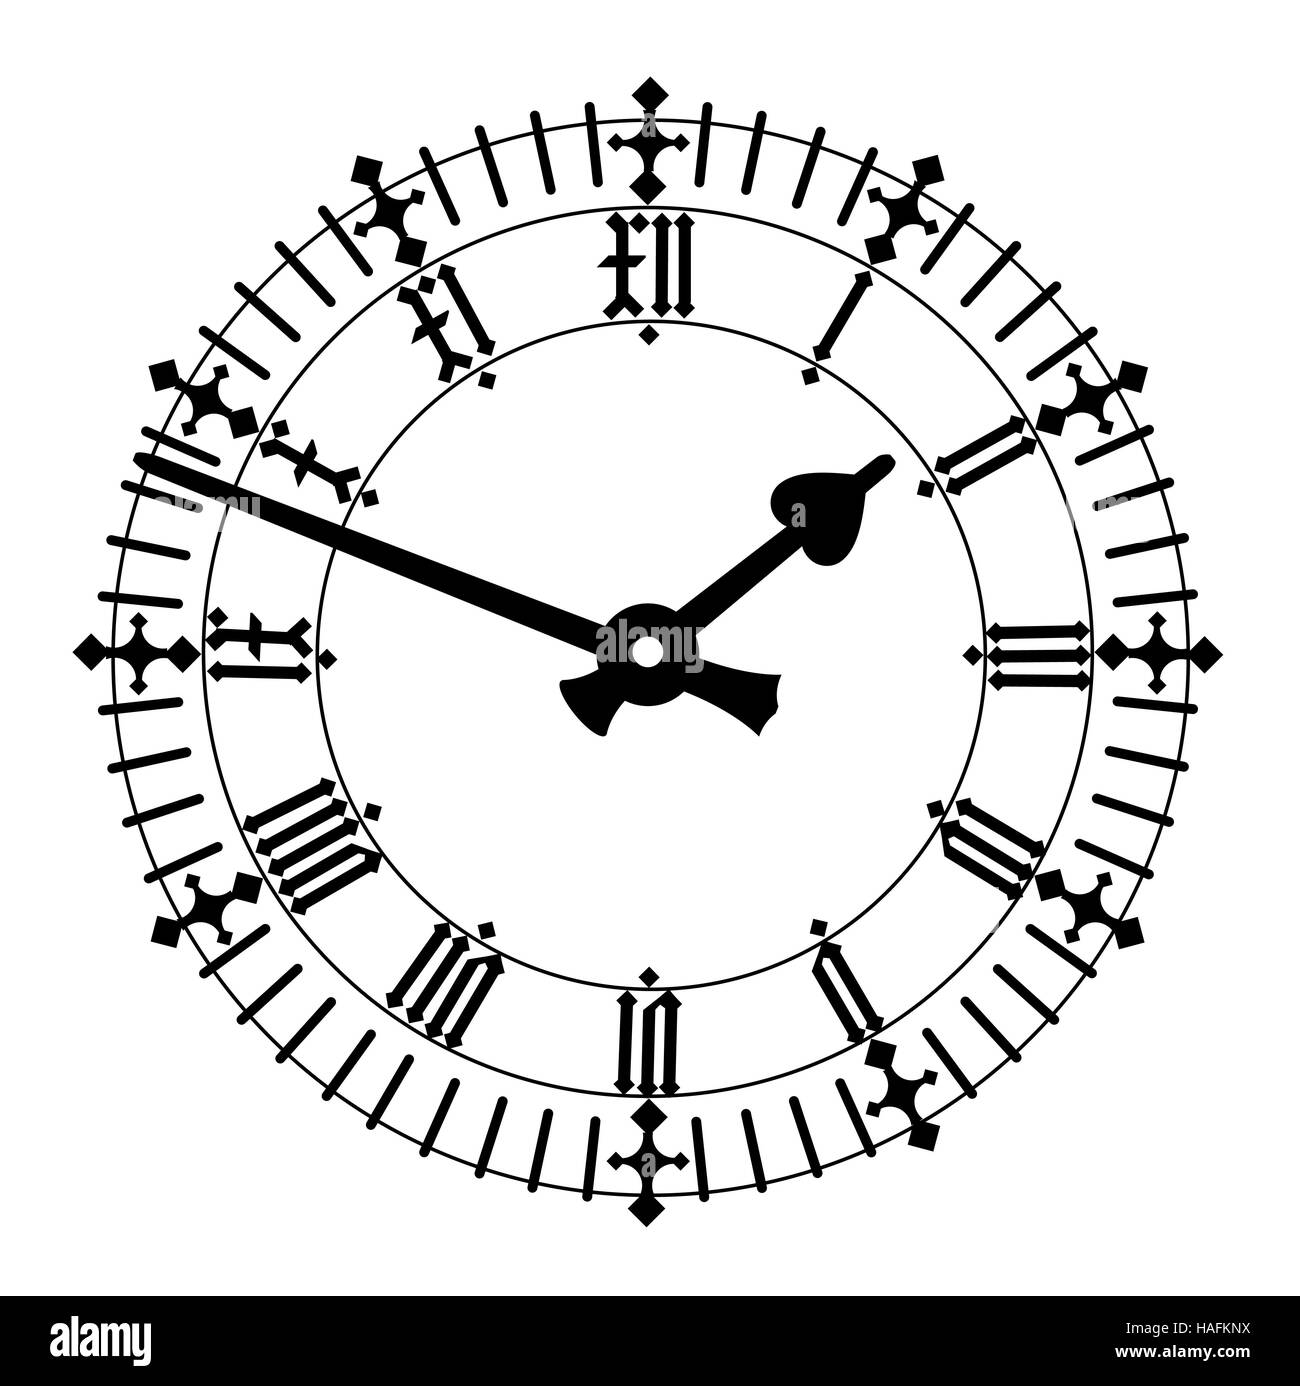 Reloj De Numeros Romanos Fotos e Imágenes de stock - Alamy